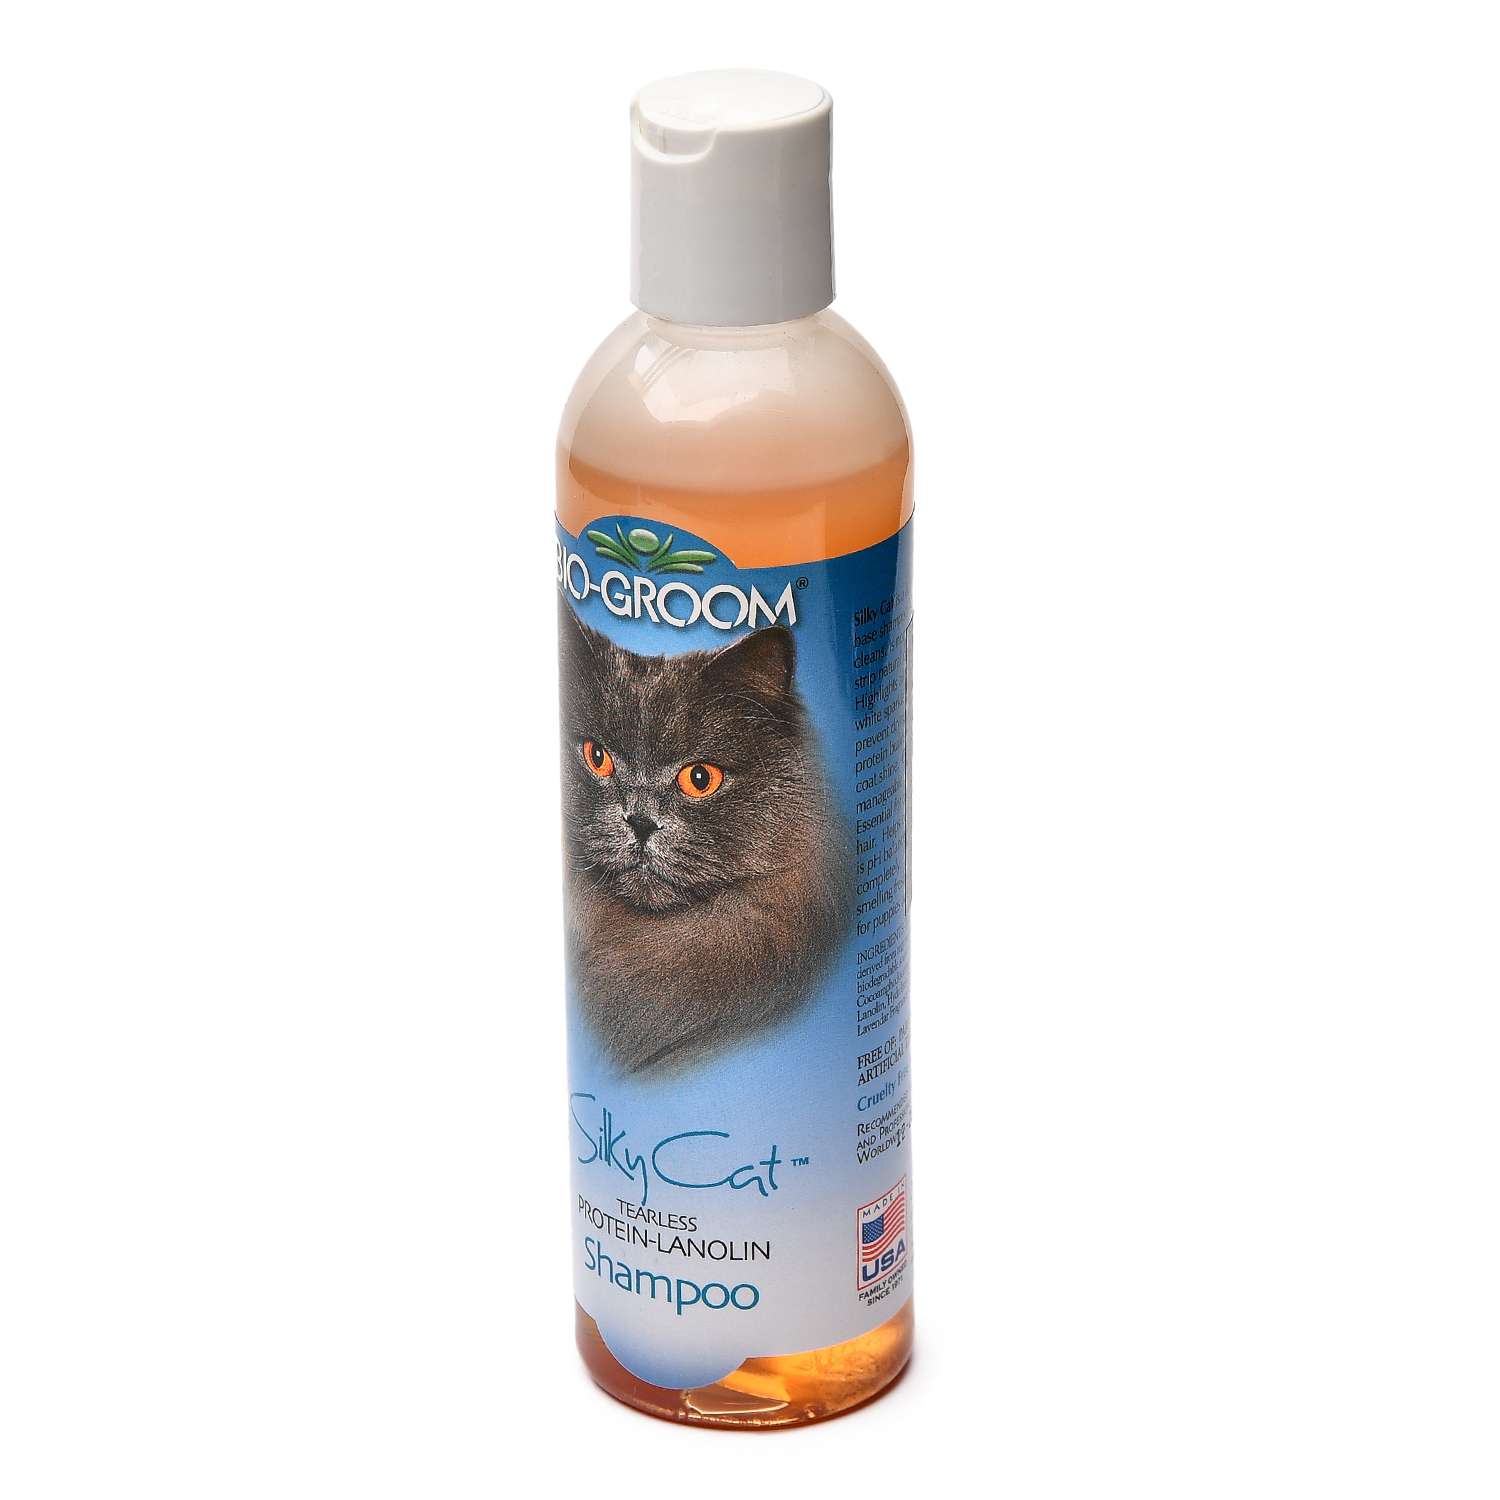 Шампунь для кошек BIO-GROOM Silky Cat Shampoo кондиционирующий с протеином и ланолином 237 мл - фото 2